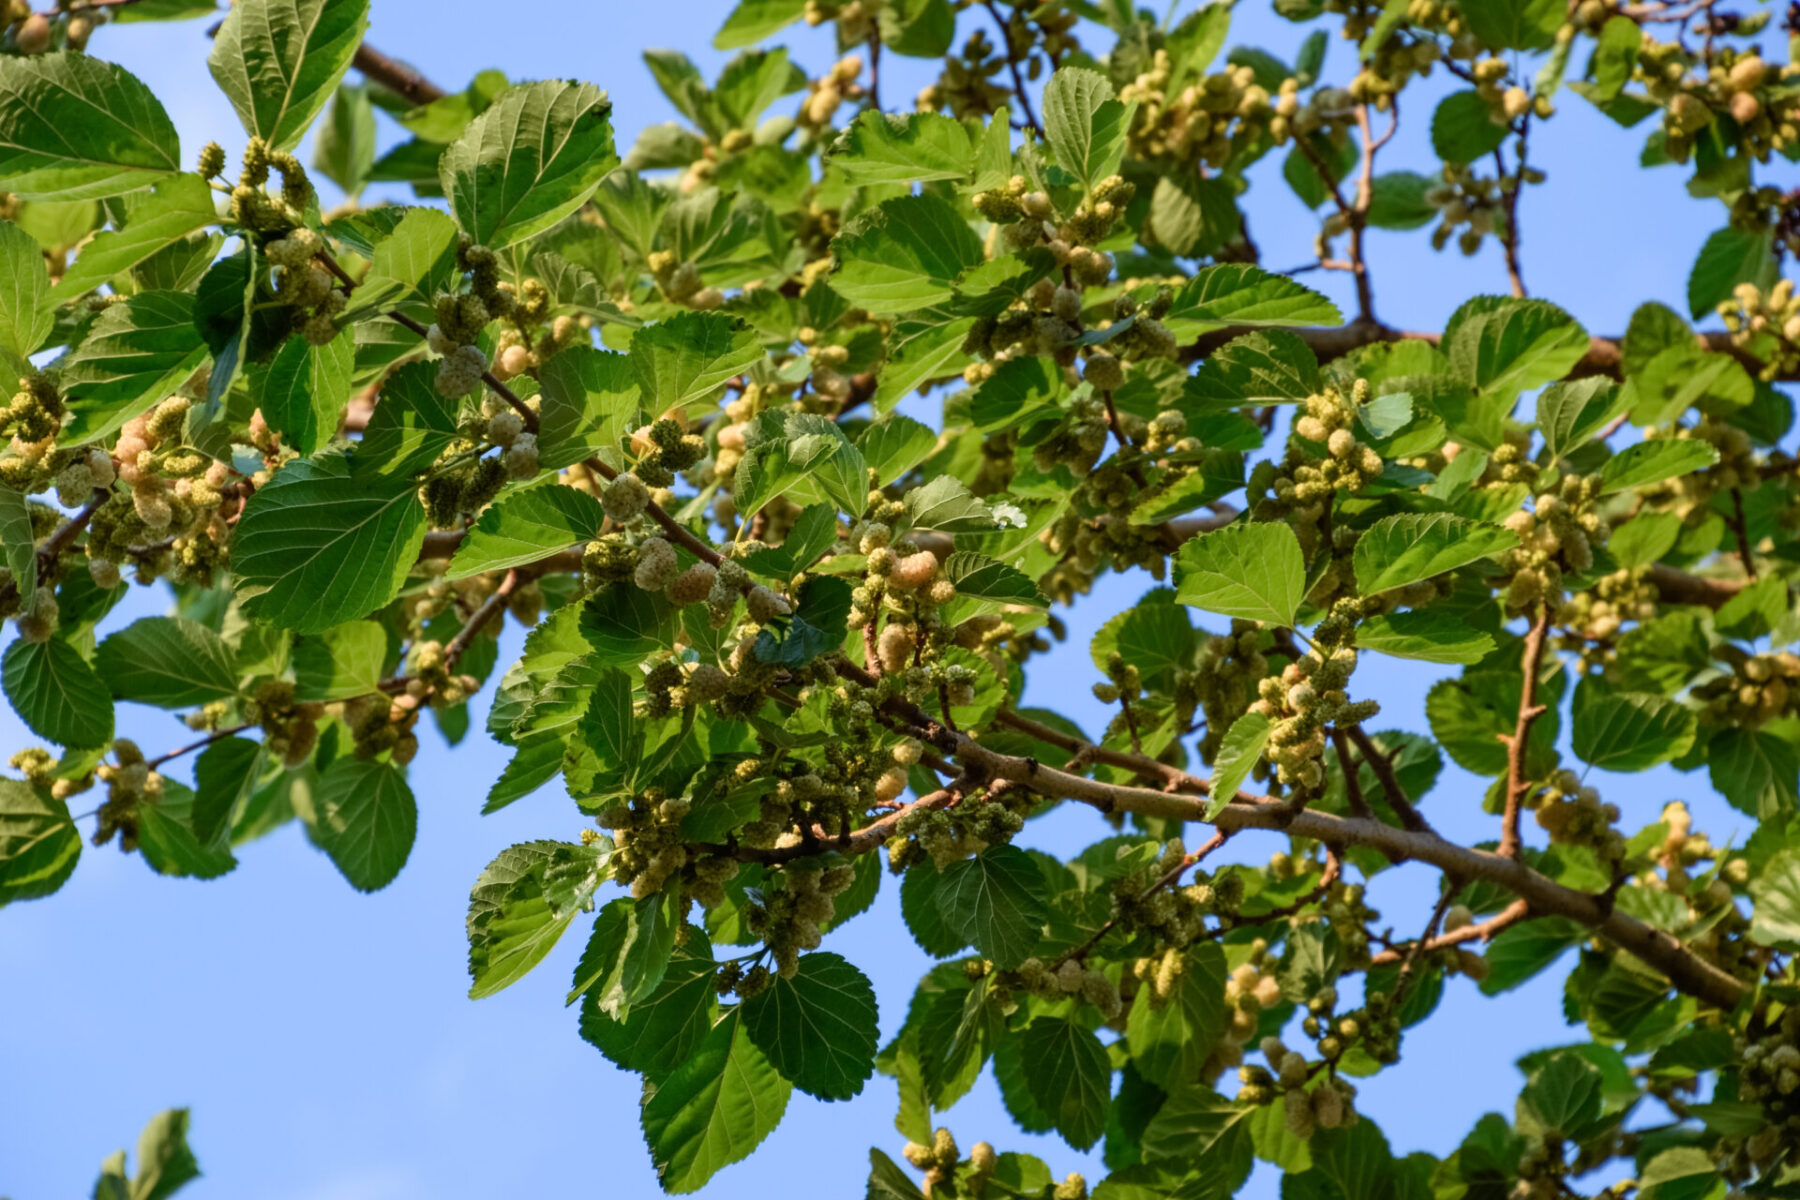 Russian Mulberry (Morus alba)